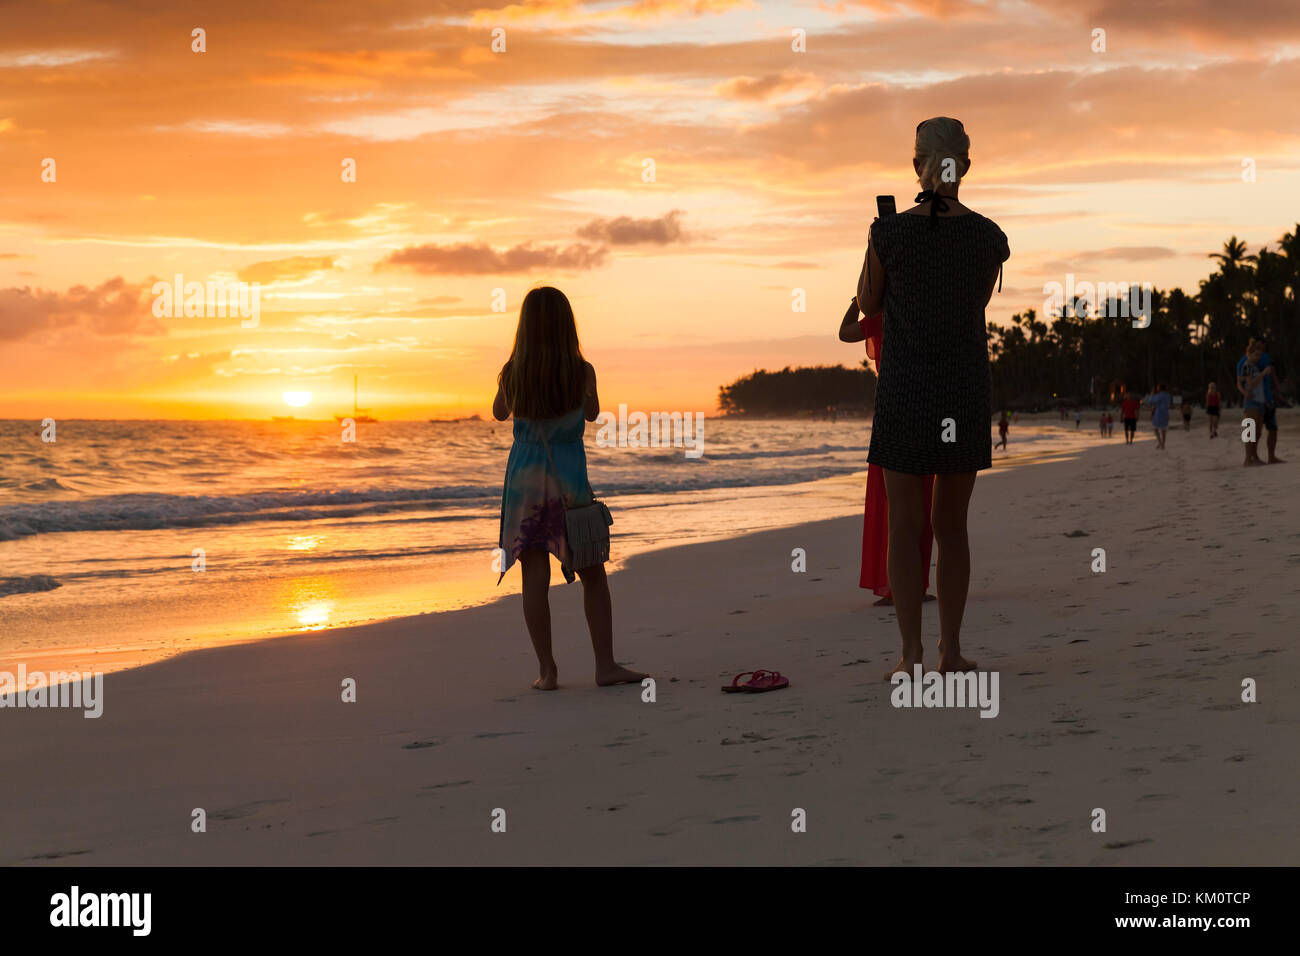 Punta Cana, República Dominicana - 5 de enero de 2017: el turista toma fotos de amanecer con smartphones, playa de Punta Cana. Foto de stock